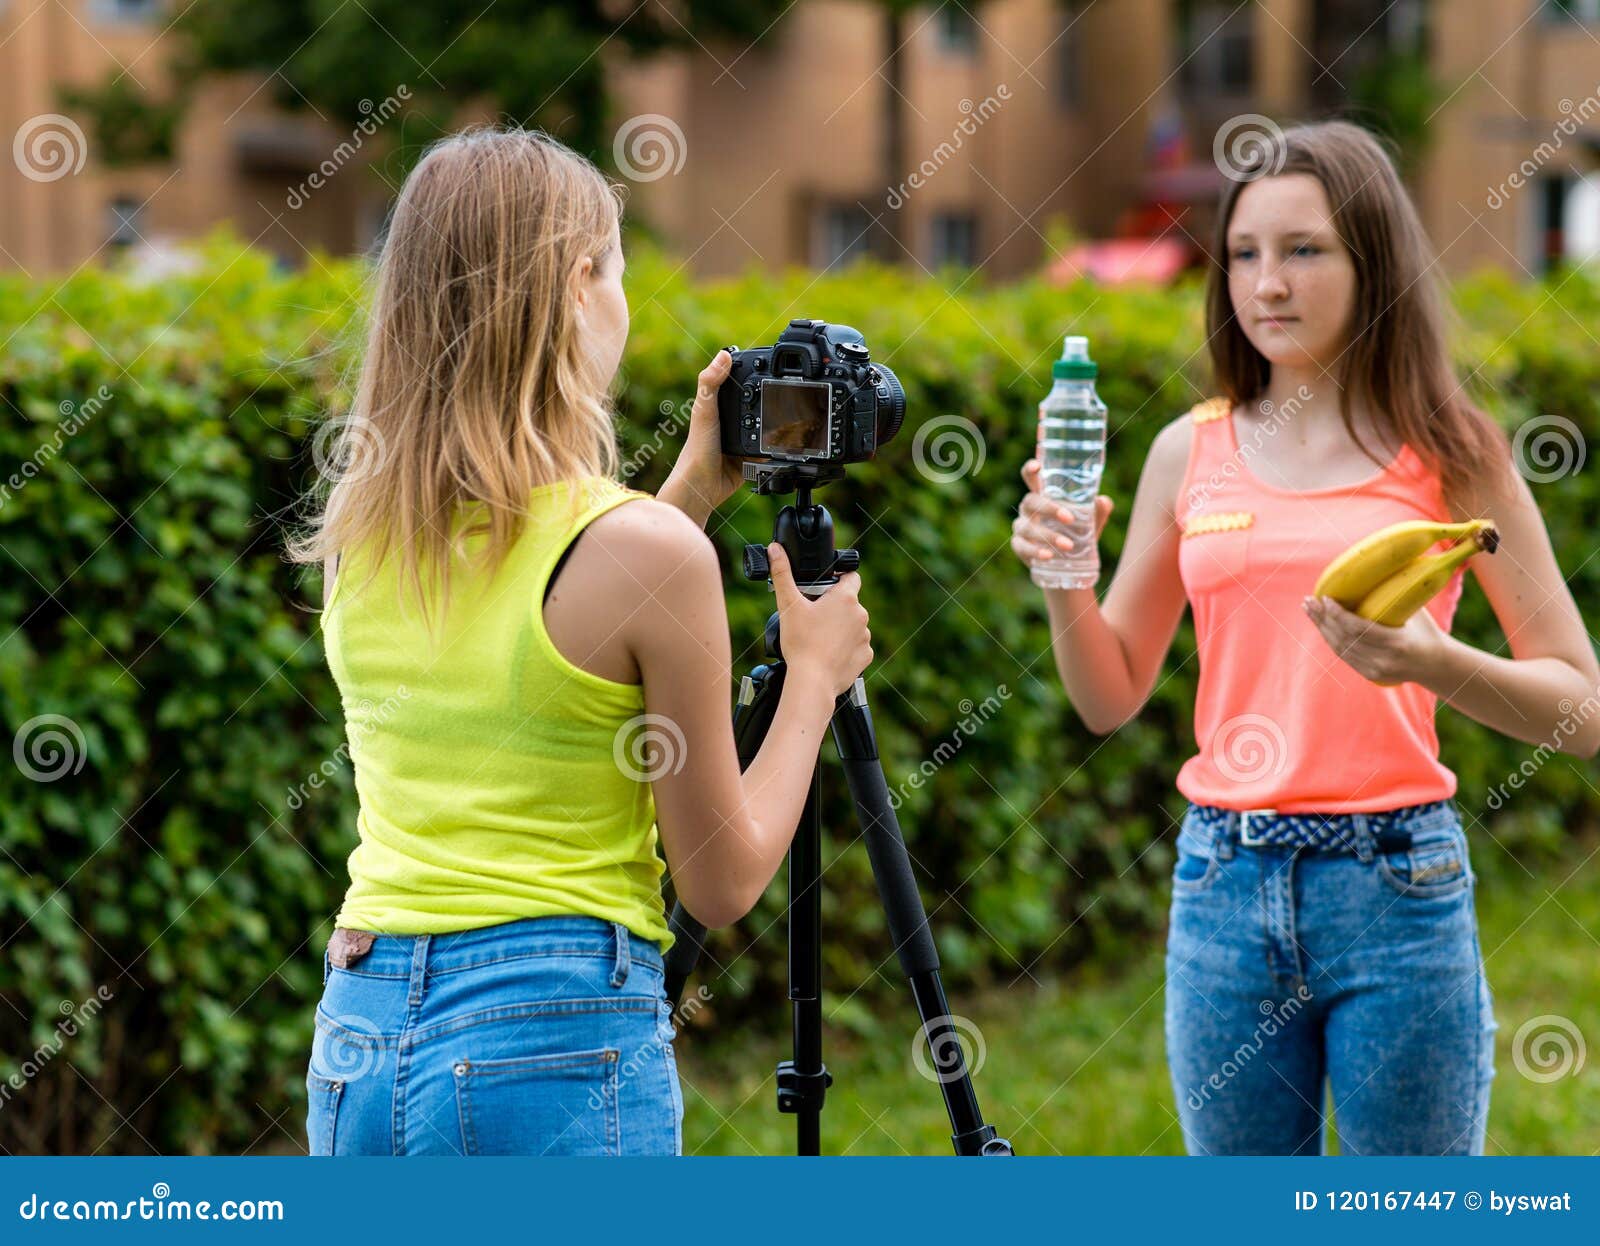 Girls Summer Camp At Camera